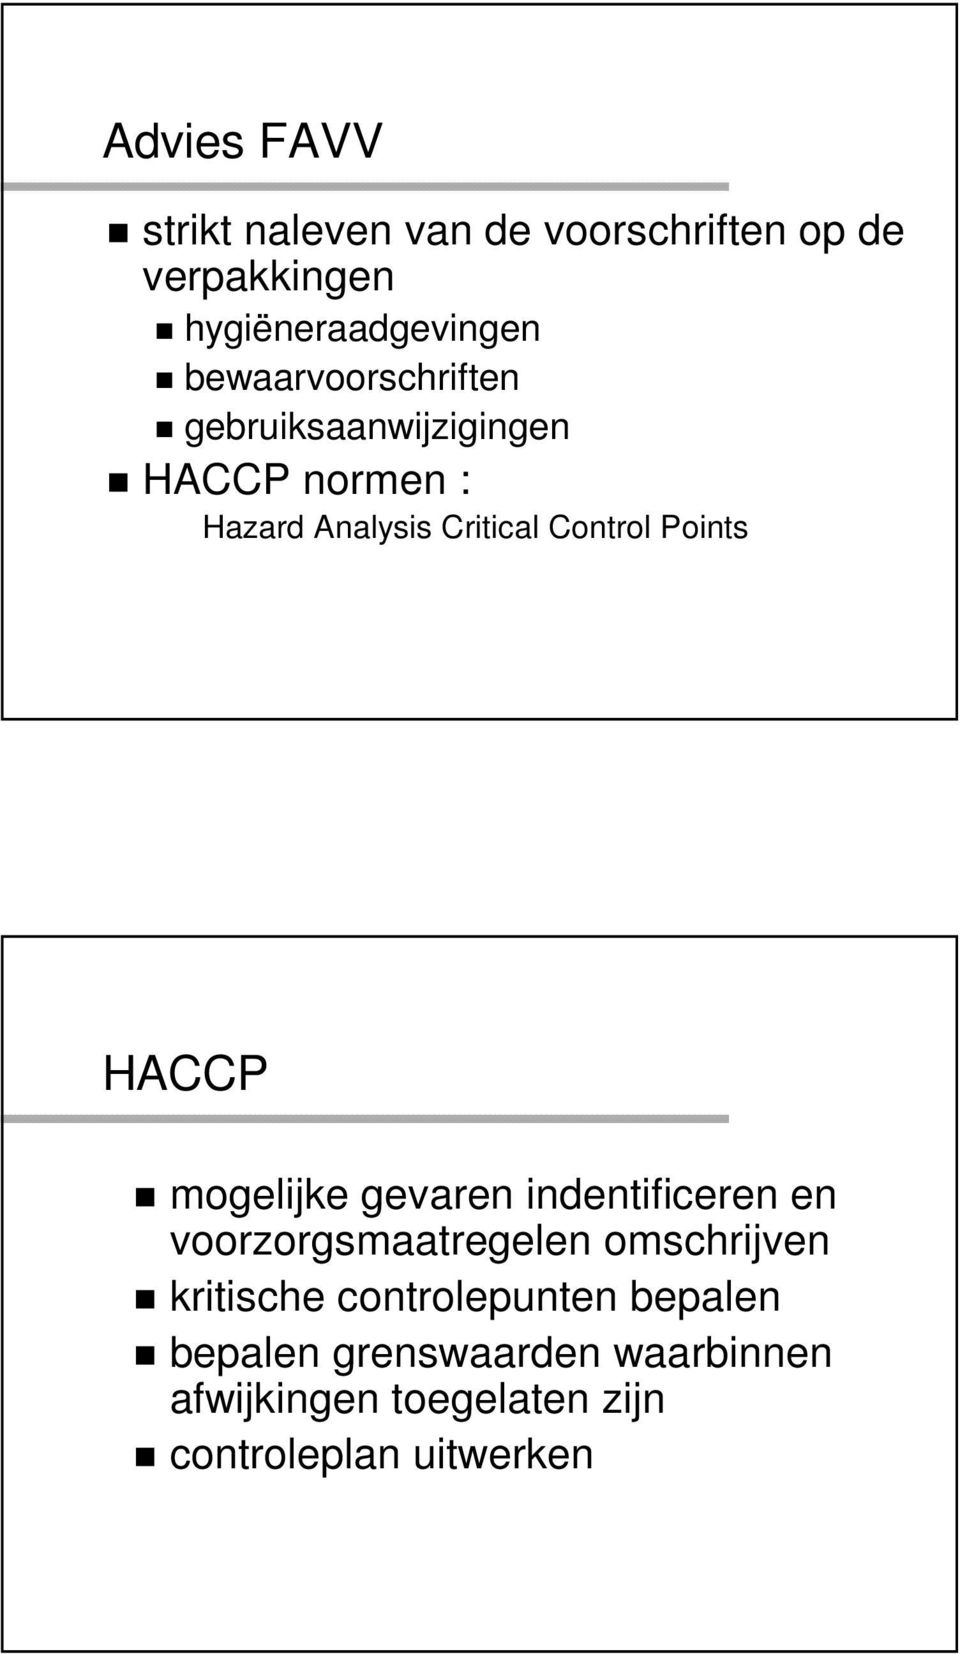 Points HACCP mogelijke gevaren indentificeren en voorzorgsmaatregelen omschrijven kritische